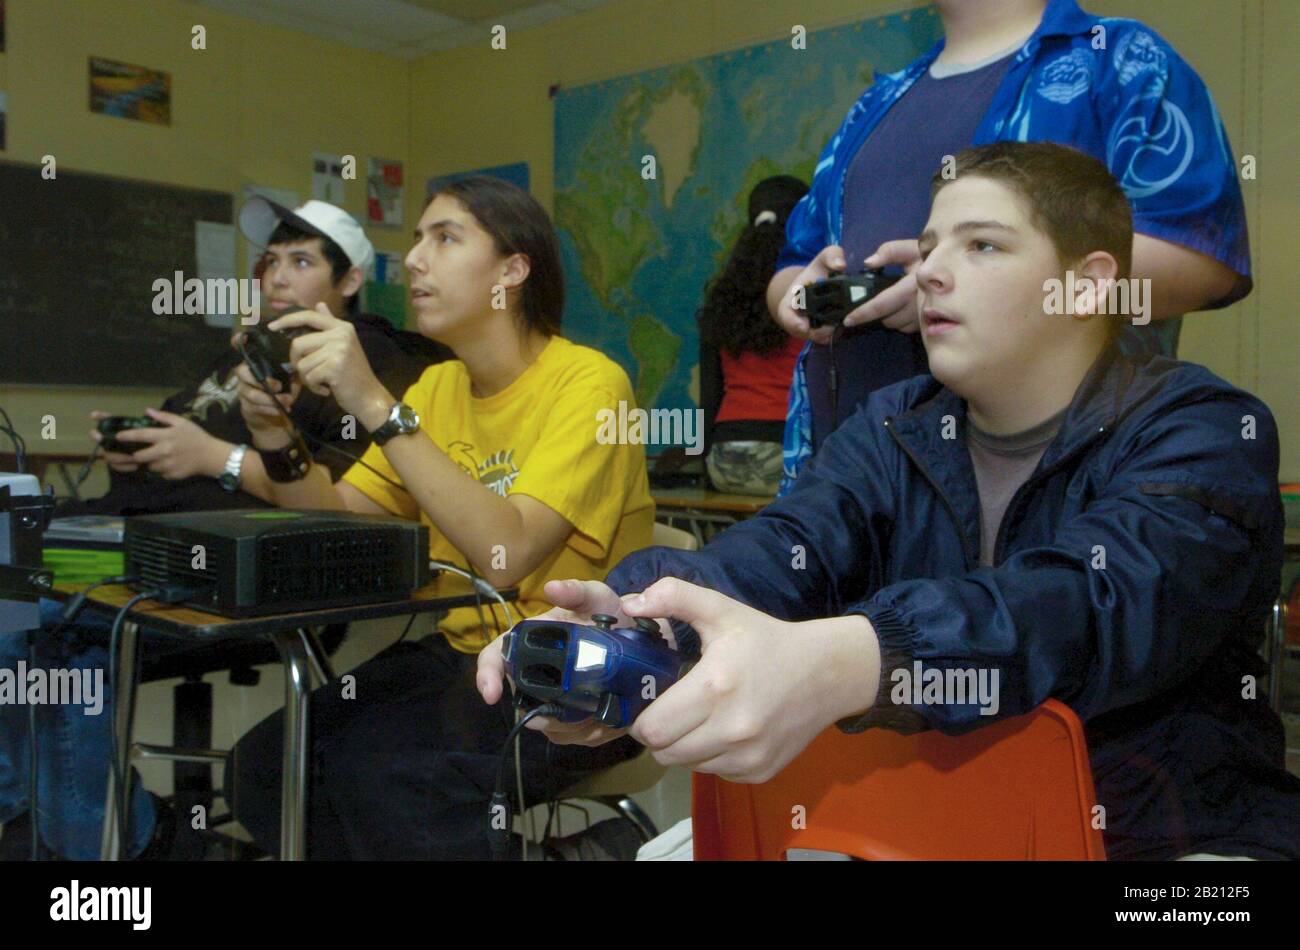 5 février 2005, Austin, Texas États-Unis : Club de jeu informatique post-scolaire à la Travis High School où les élèves apprennent de nouveaux jeux et des parcours de carrière possibles dans l'industrie du jeu. ©Bob Daemmrich Banque D'Images